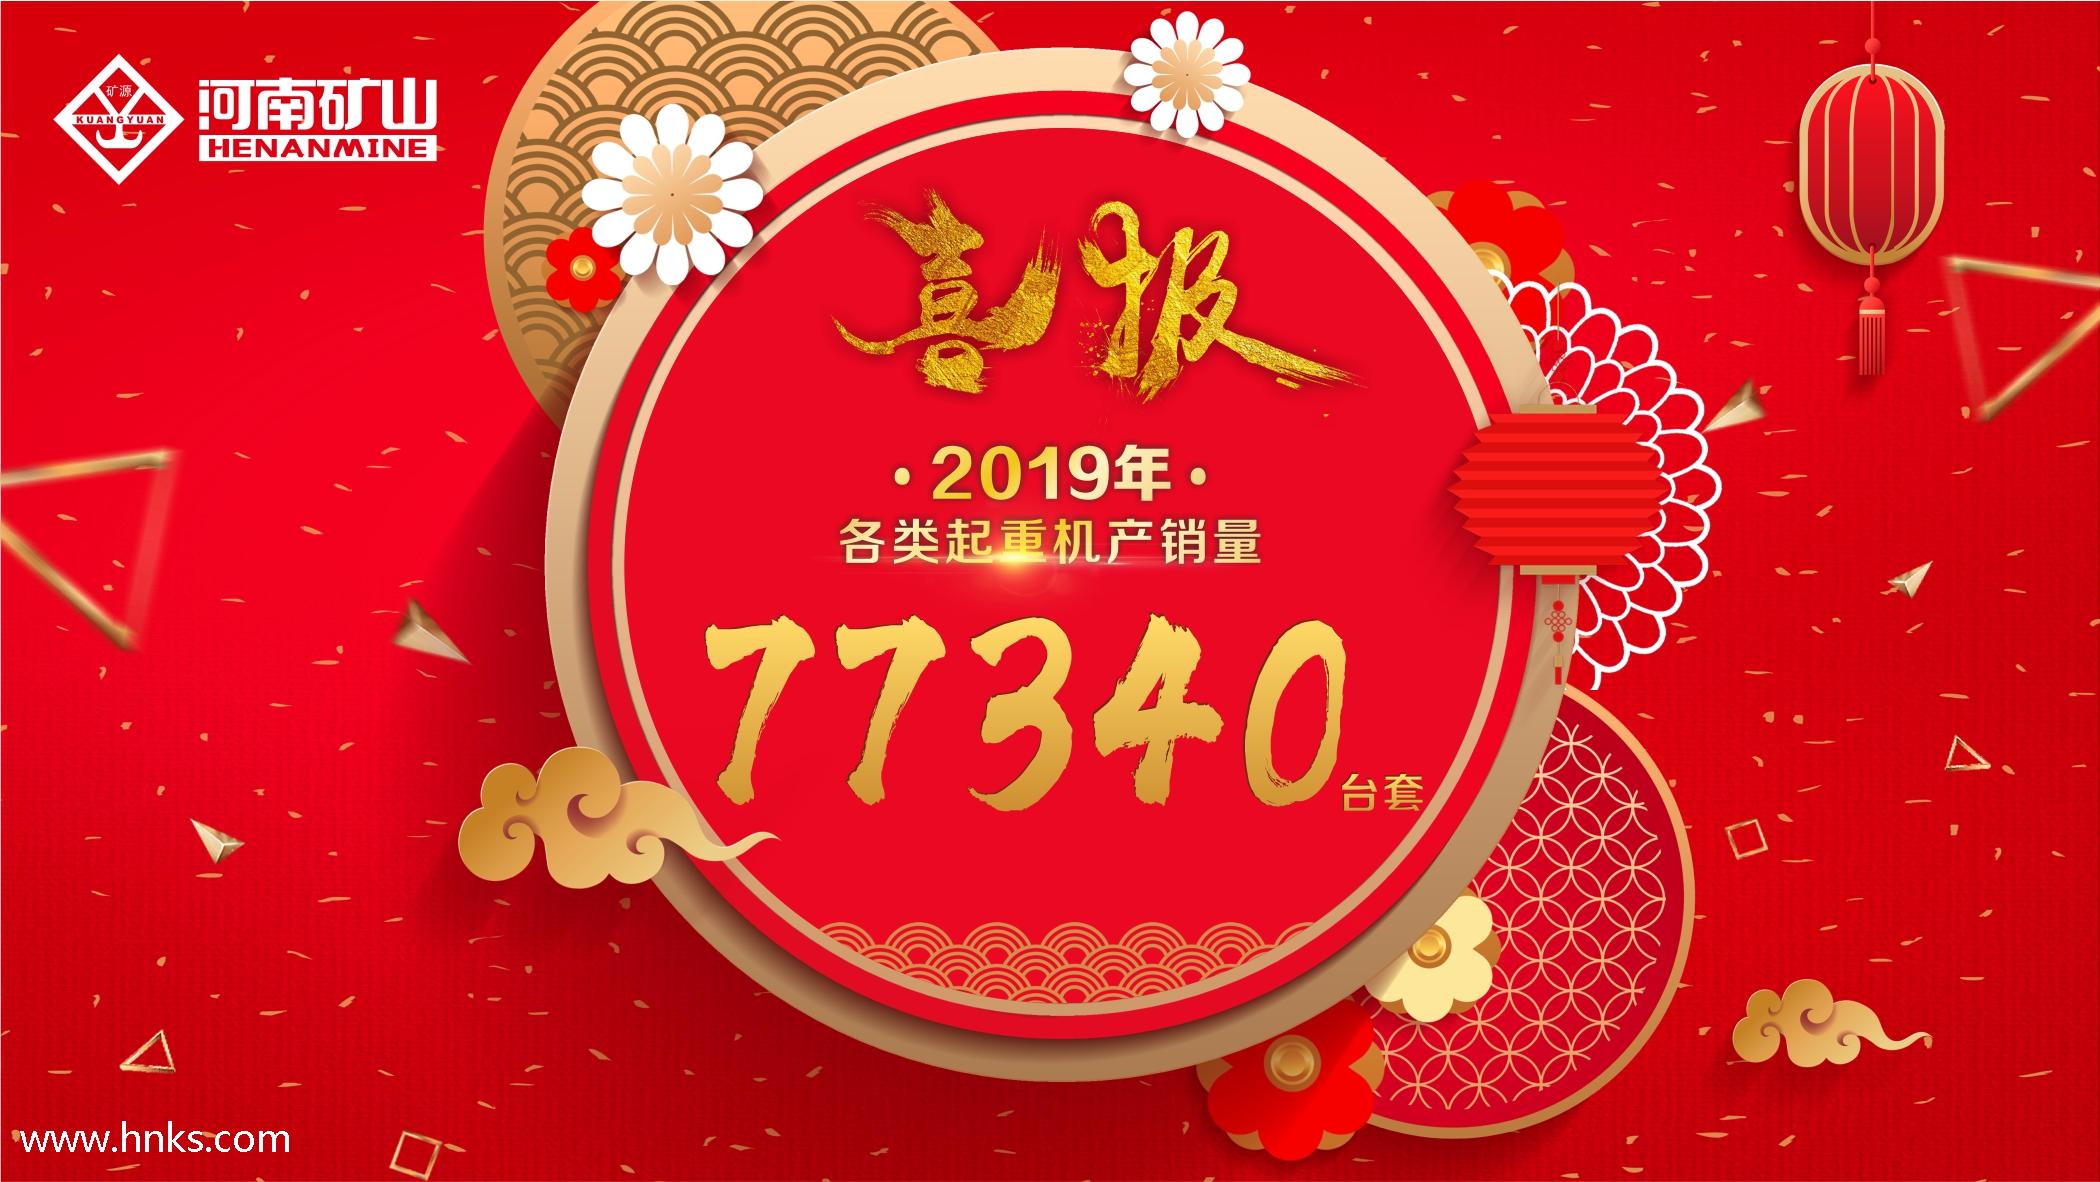 河南礦山2019年各類起重機產銷量77340臺套-河南礦山沈陽分